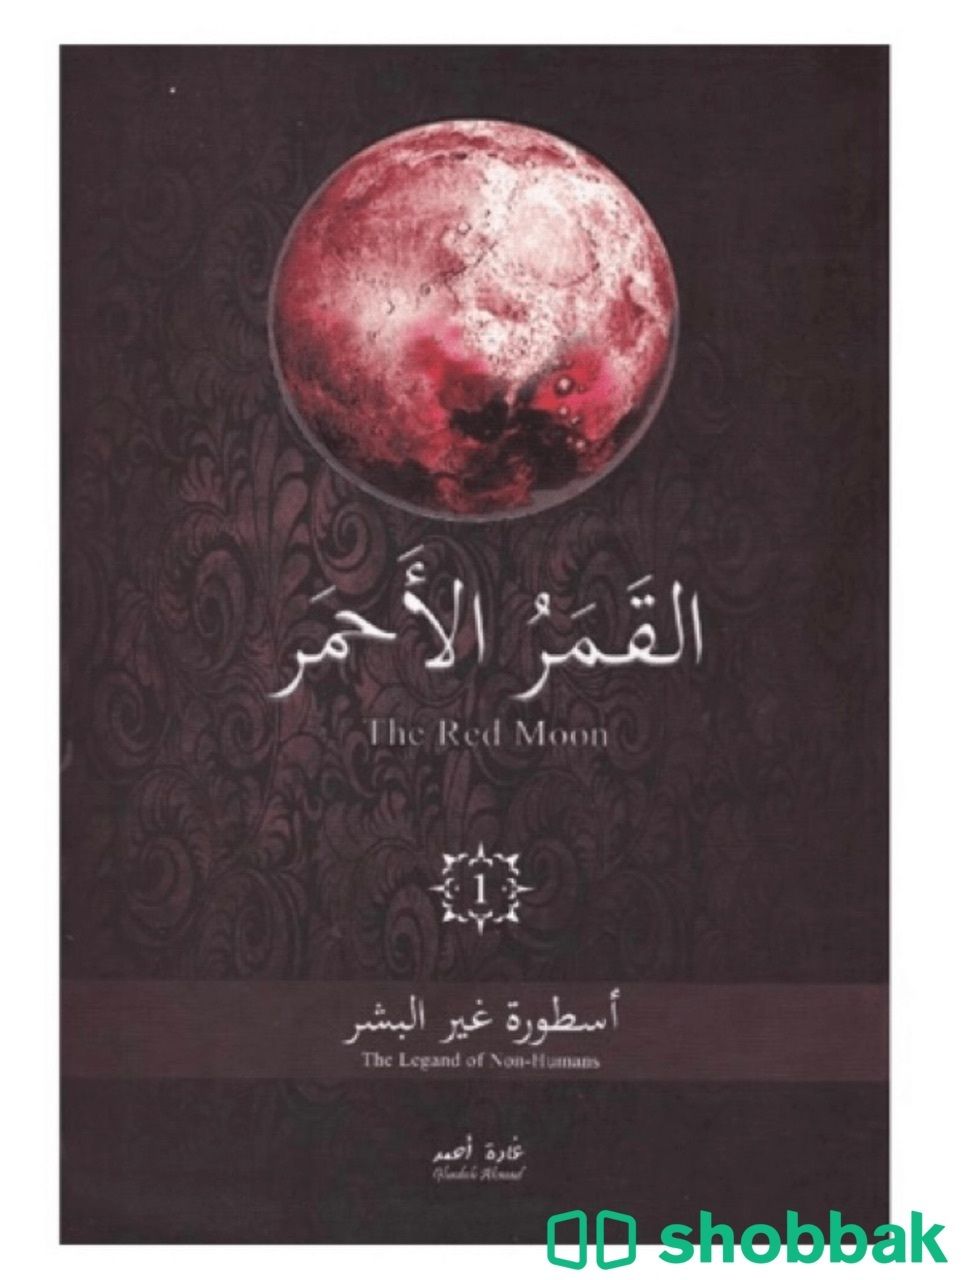 كتاب القمر الاحمر  Shobbak Saudi Arabia